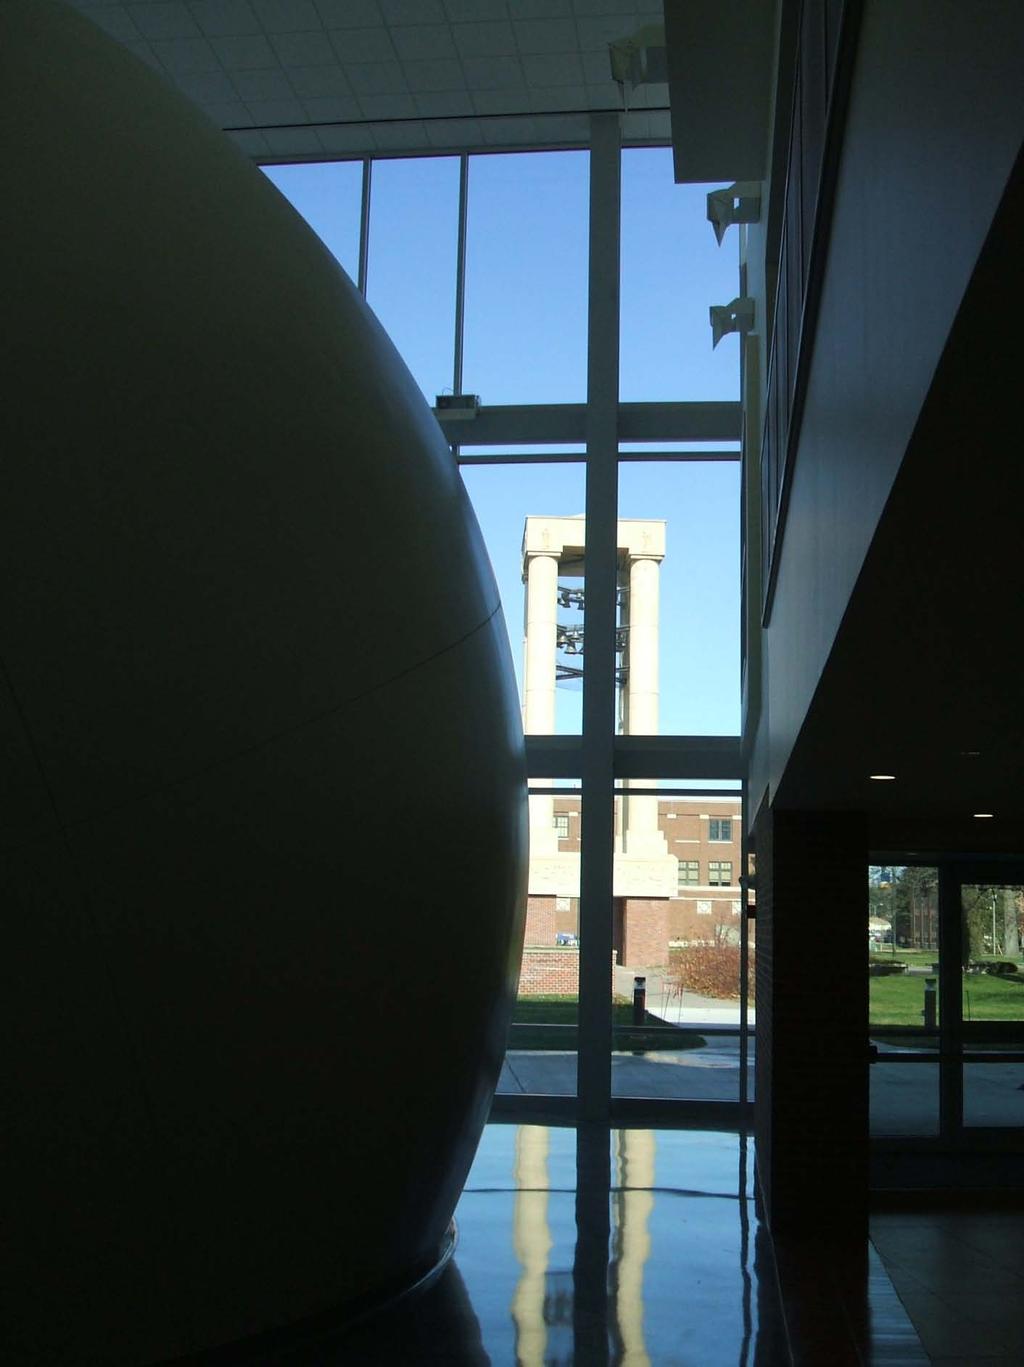 Looking Past Planetarium